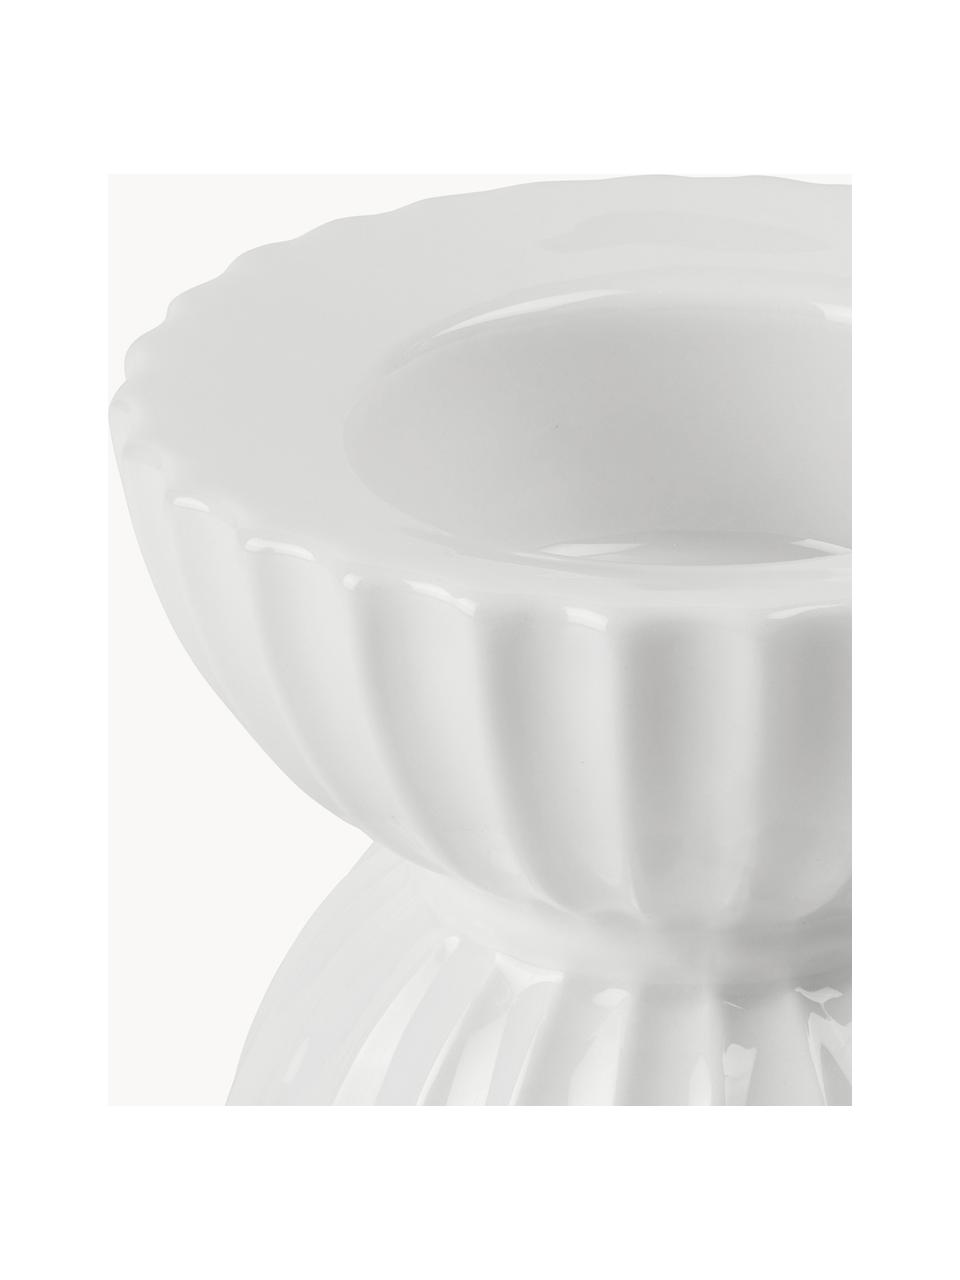 Porzellan-Teelichthalter Tura mit geriffelter Oberfläche, Porzellan, Weiss, Ø 8 x H 7 cm